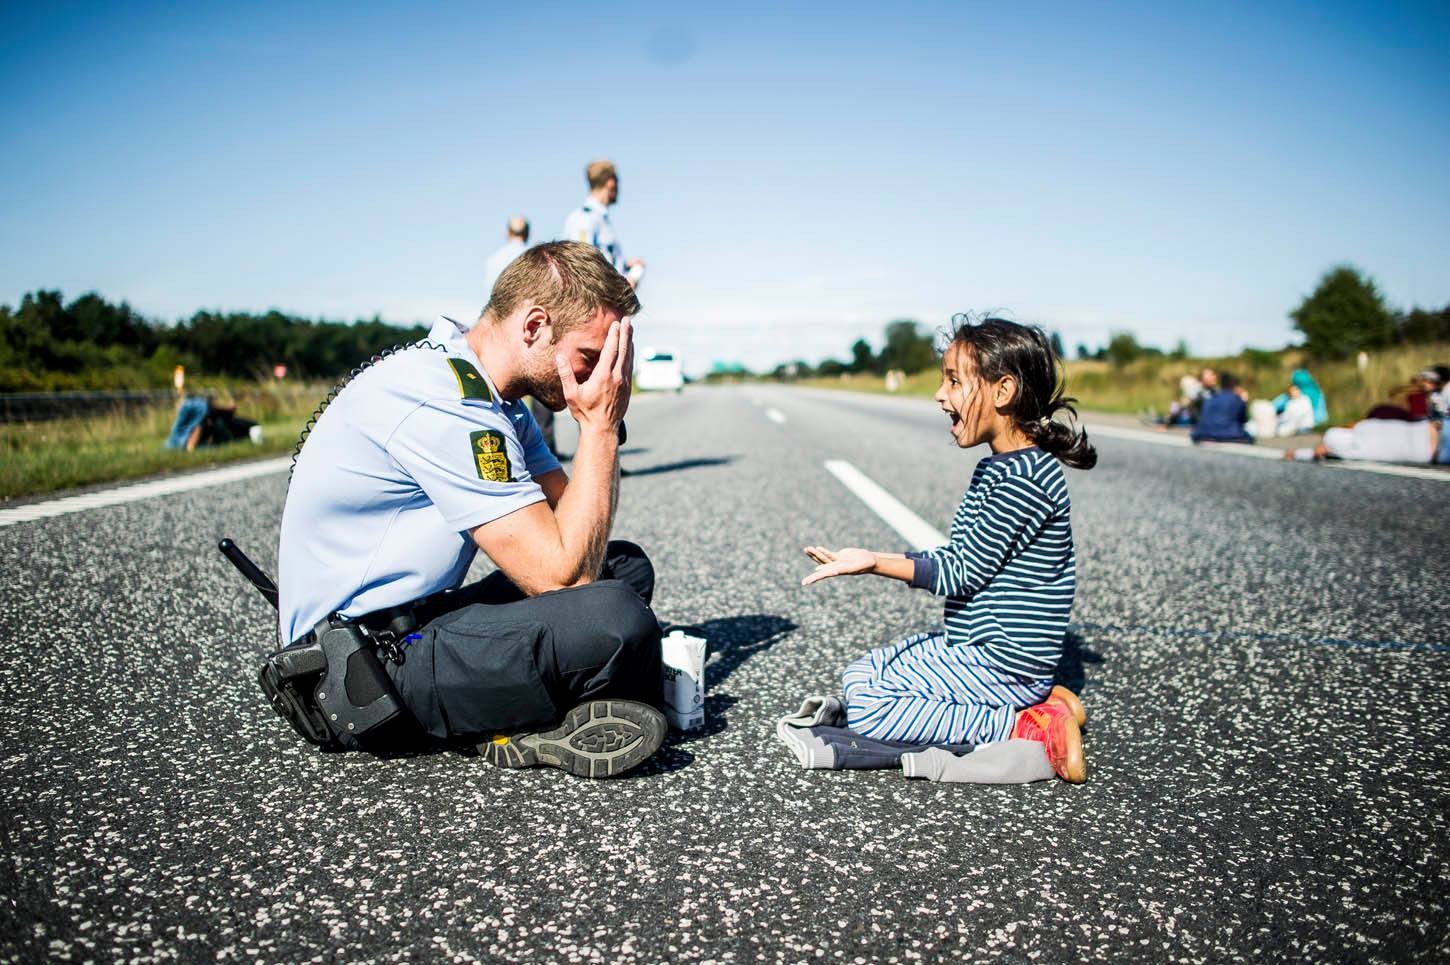 Danish Police Officer - Refugees